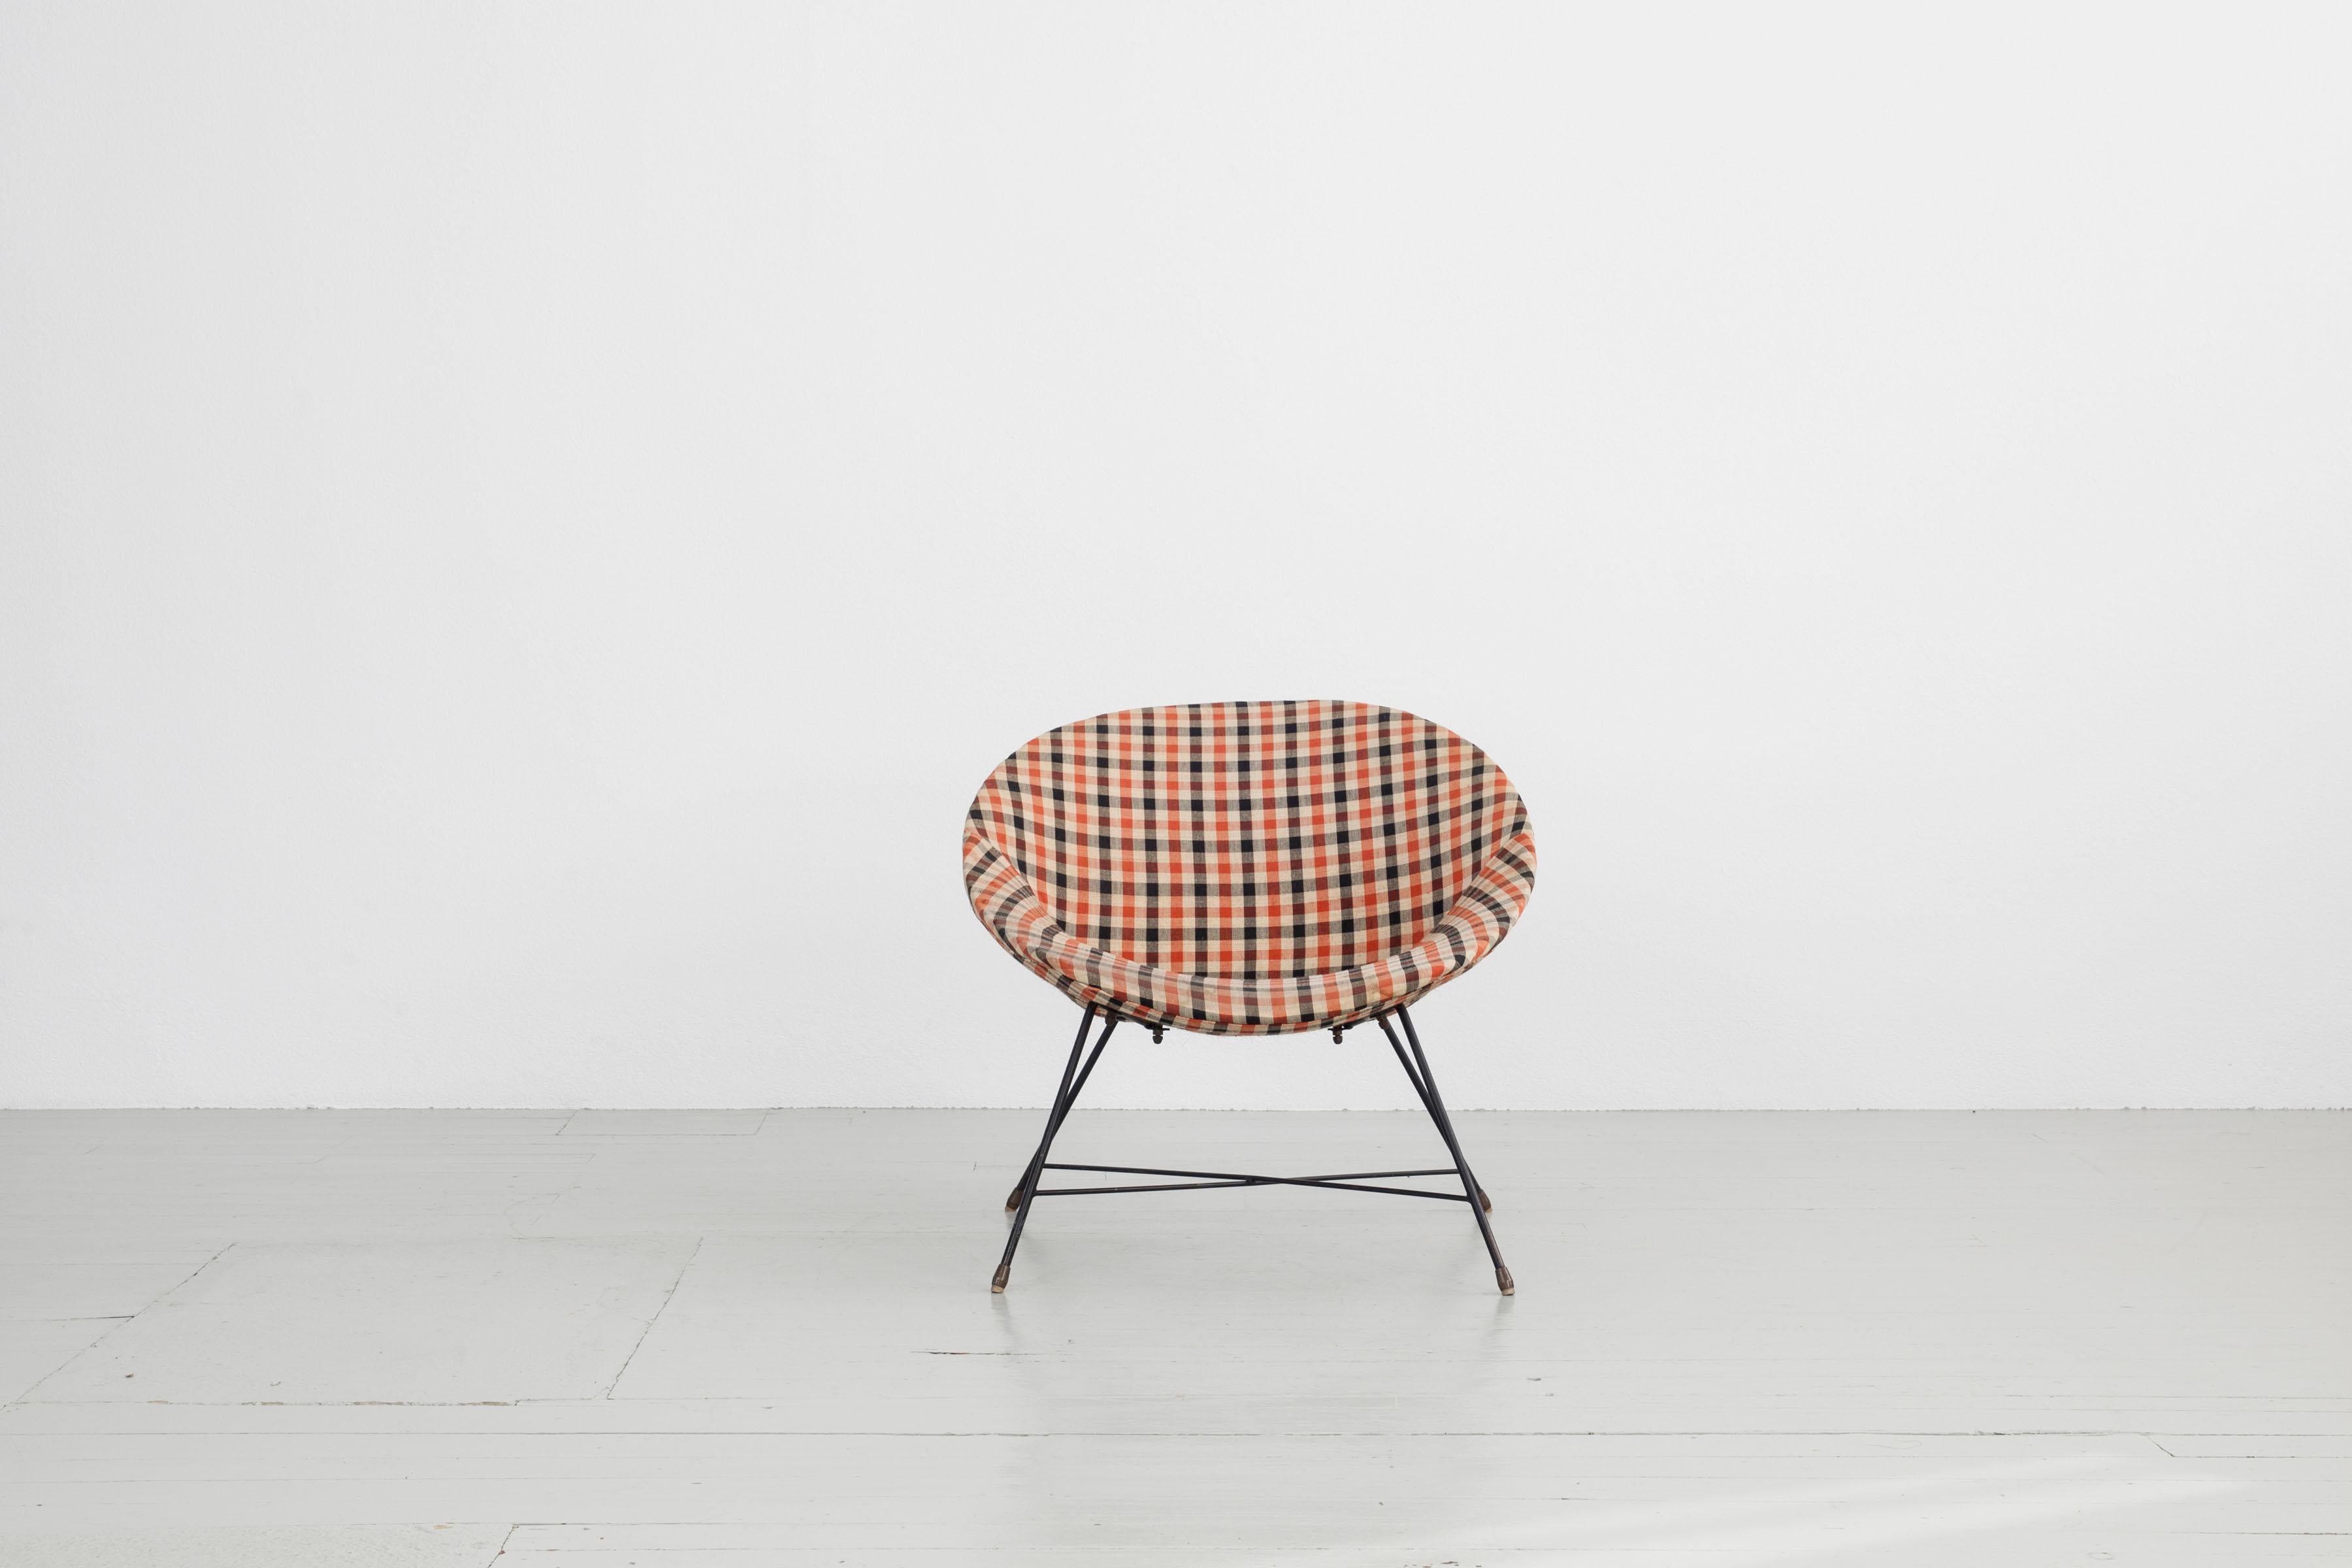 Ce fauteuil ludique a été conçu dans les années 1950 en Italie par Augusto Bozzi et fabriqué par Saporiti et il porte l'étiquette originale. La chaise est en état original avec des décompositions mineures au niveau de la mousse du siège. Le siège